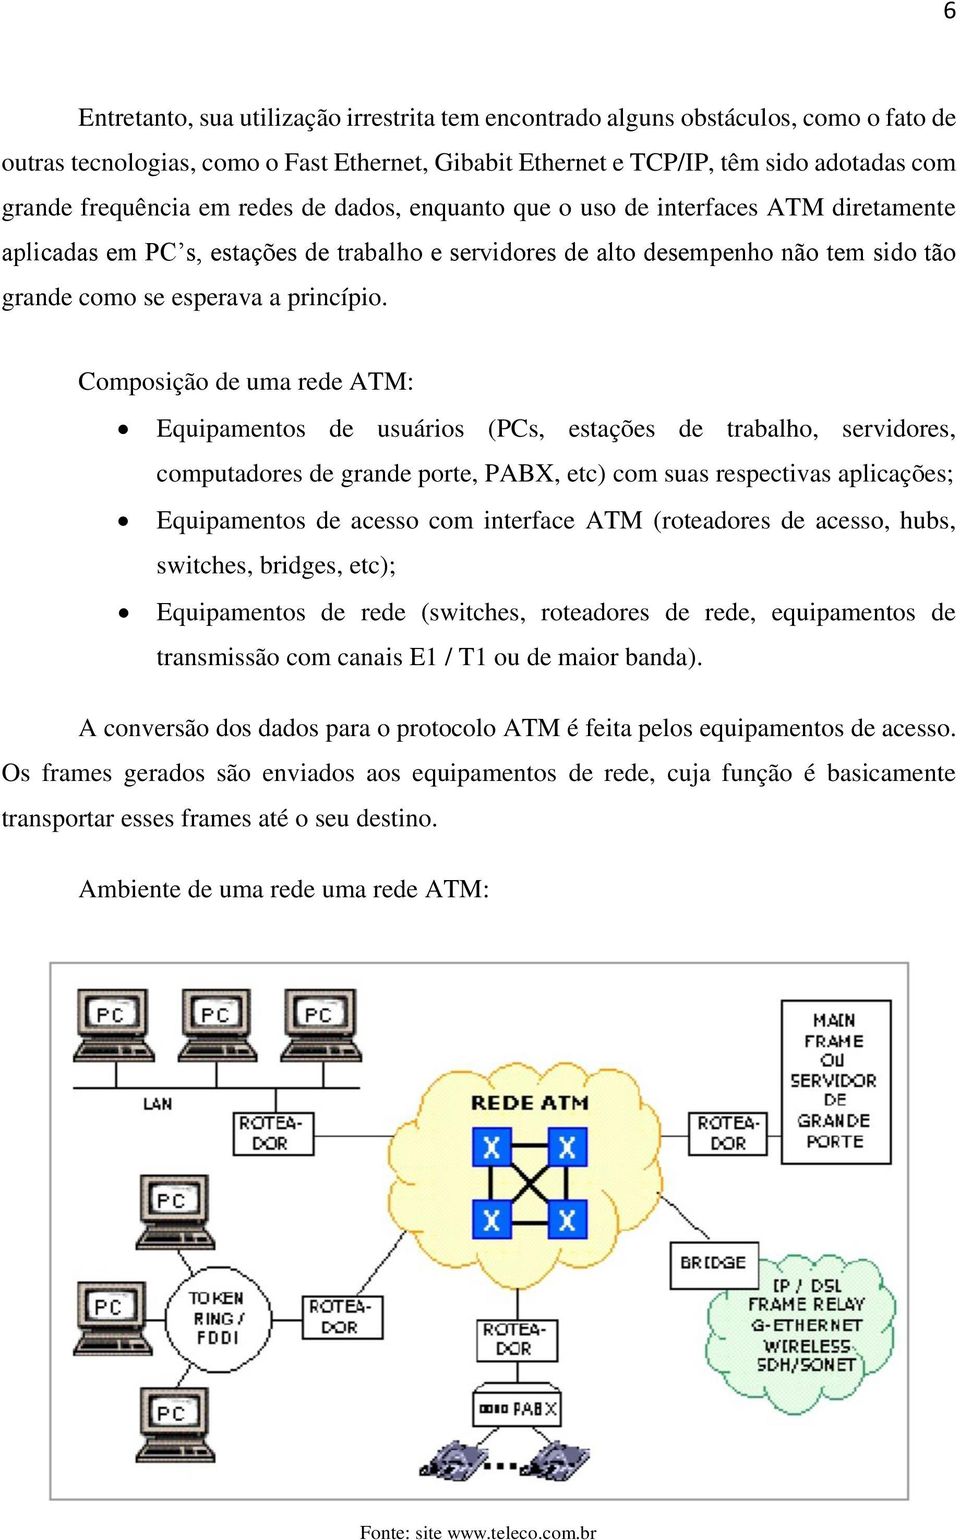 Composição de uma rede ATM: Equipamentos de usuários (PCs, estações de trabalho, servidores, computadores de grande porte, PABX, etc) com suas respectivas aplicações; Equipamentos de acesso com